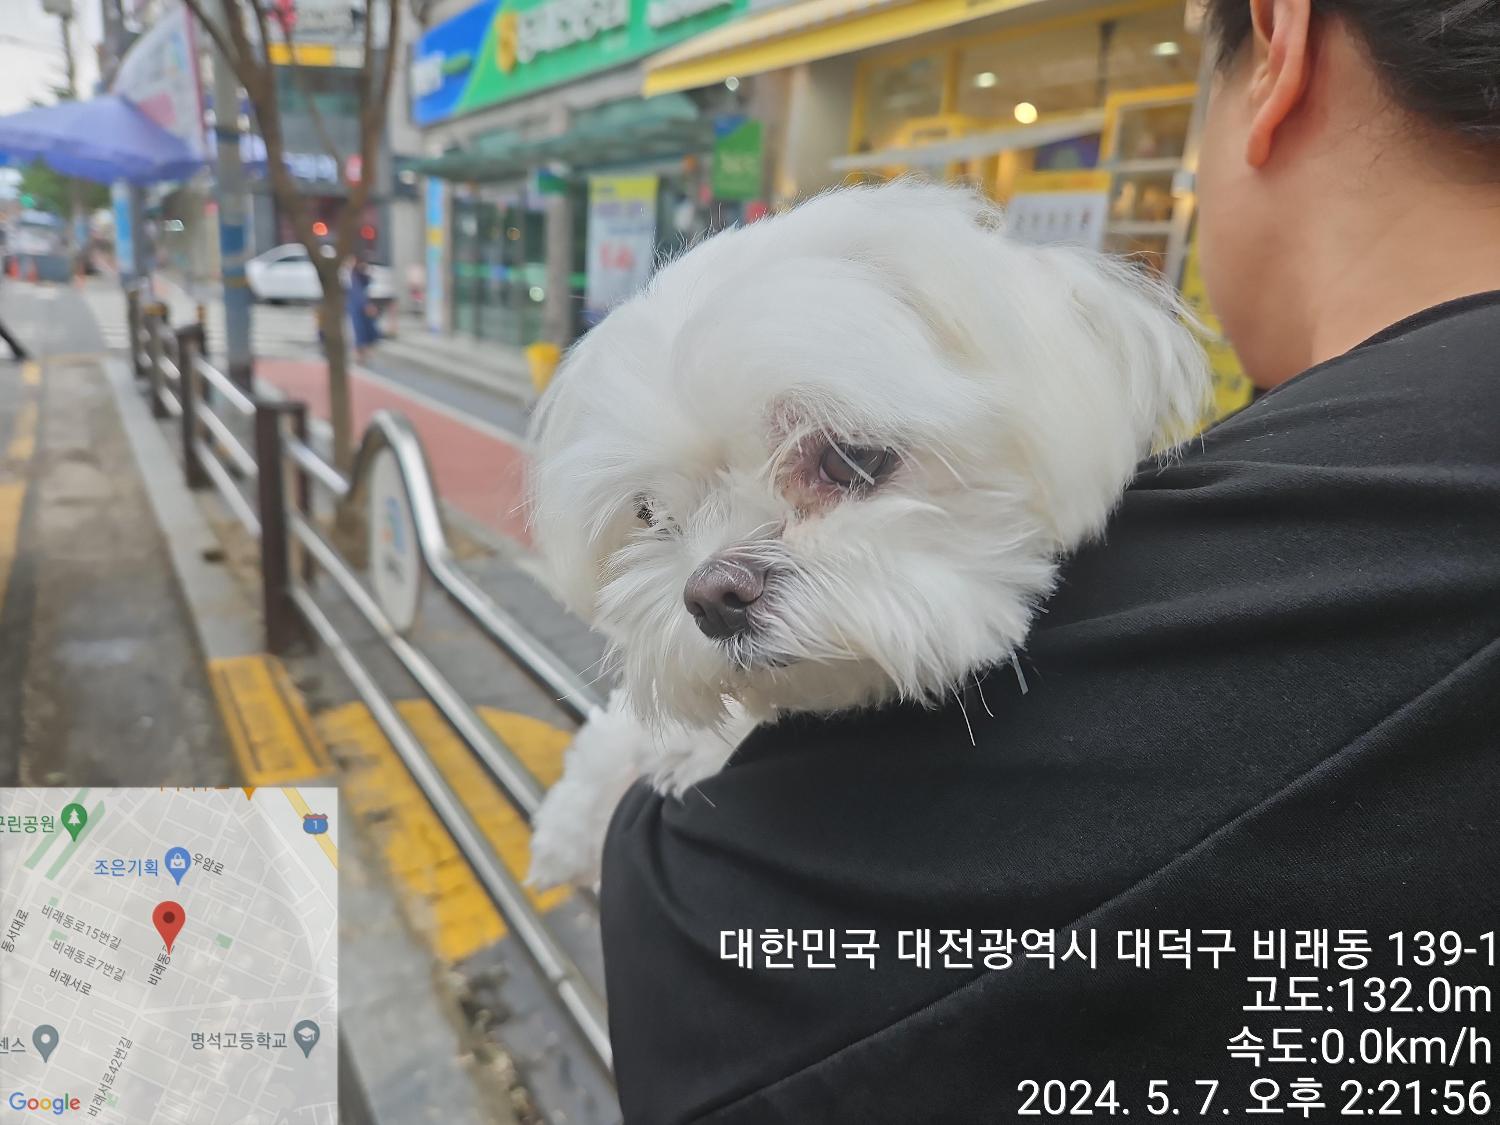 공고 번호가 대전-대덕-2024-00086인 말티즈 동물 사진